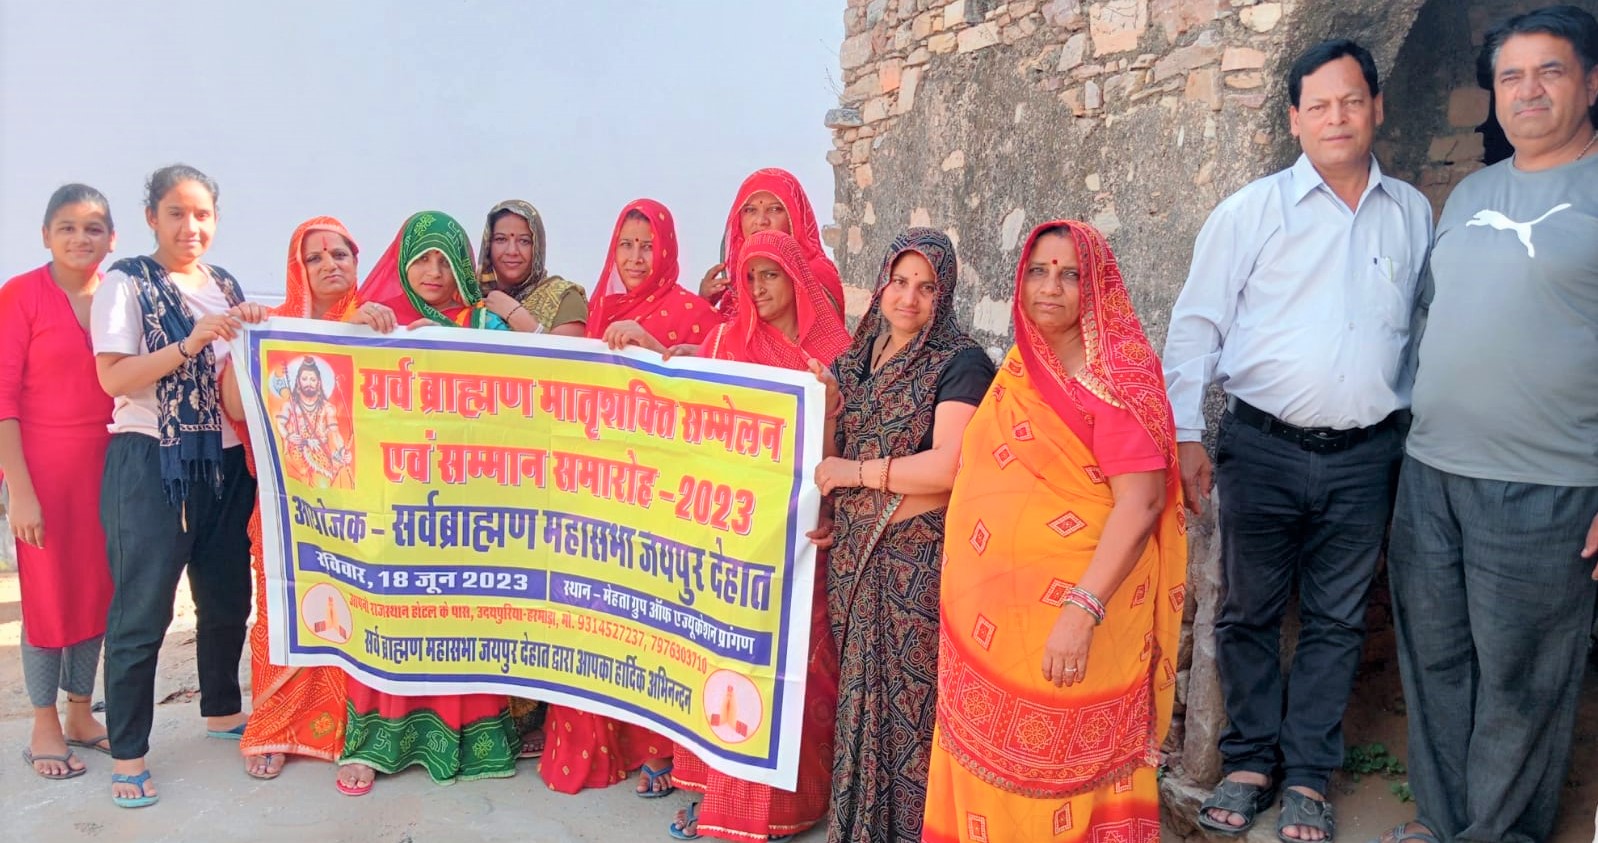 18 जून को आयोजित होने वाले सर्व ब्राह्मण मातृशक्ति सम्मेलन के पोस्टर का हुआ विमोचन, गांव गांव में किया जनसंपर्क